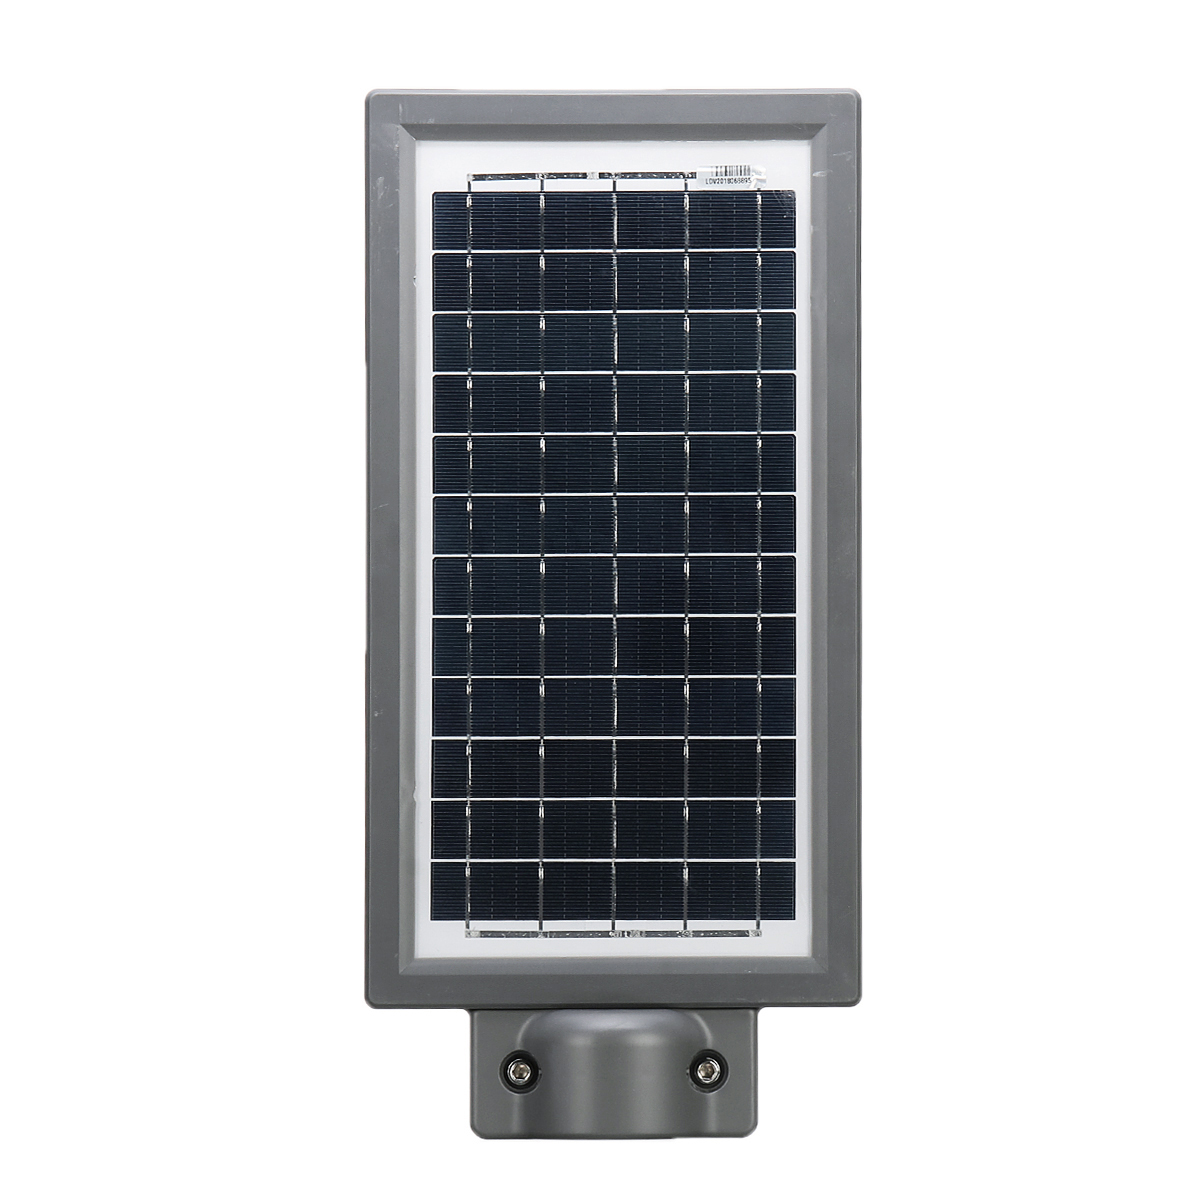 30W-Solar-Panel-Power-LED-Street-Light-PIR-Motion-Sensor--Light-Sensor-Wall-Lamp-1504283-7